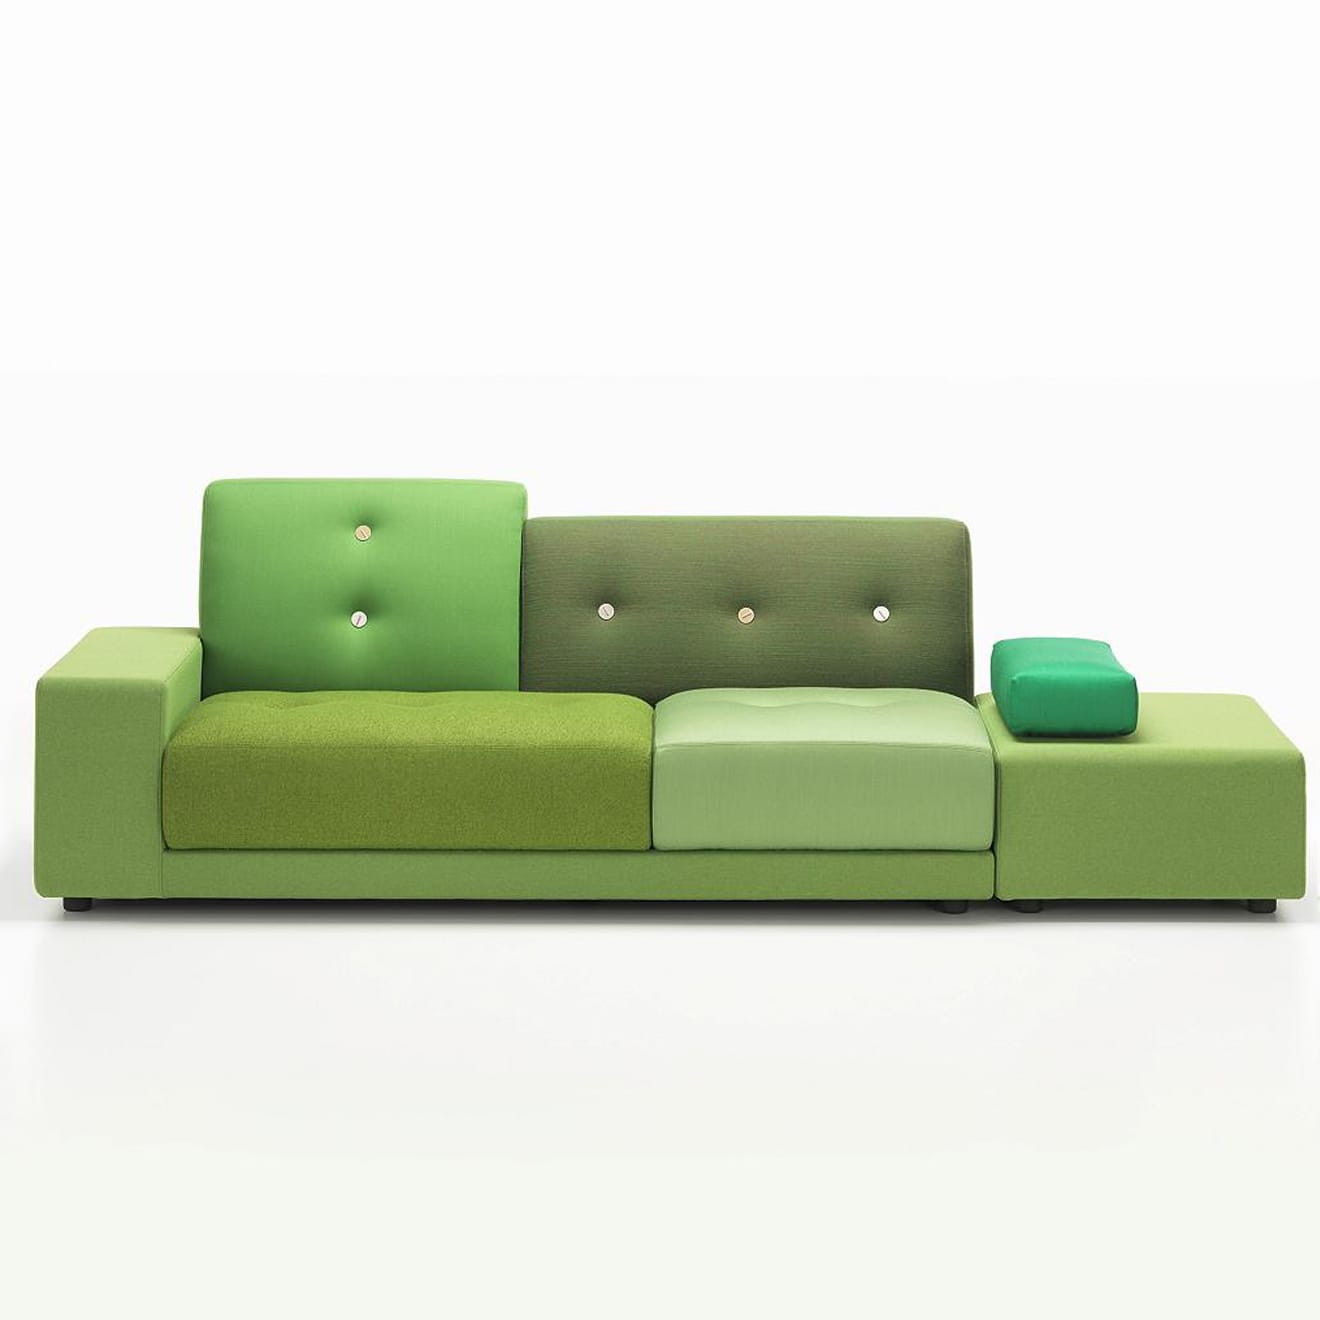 Polder Sofa by Vitra